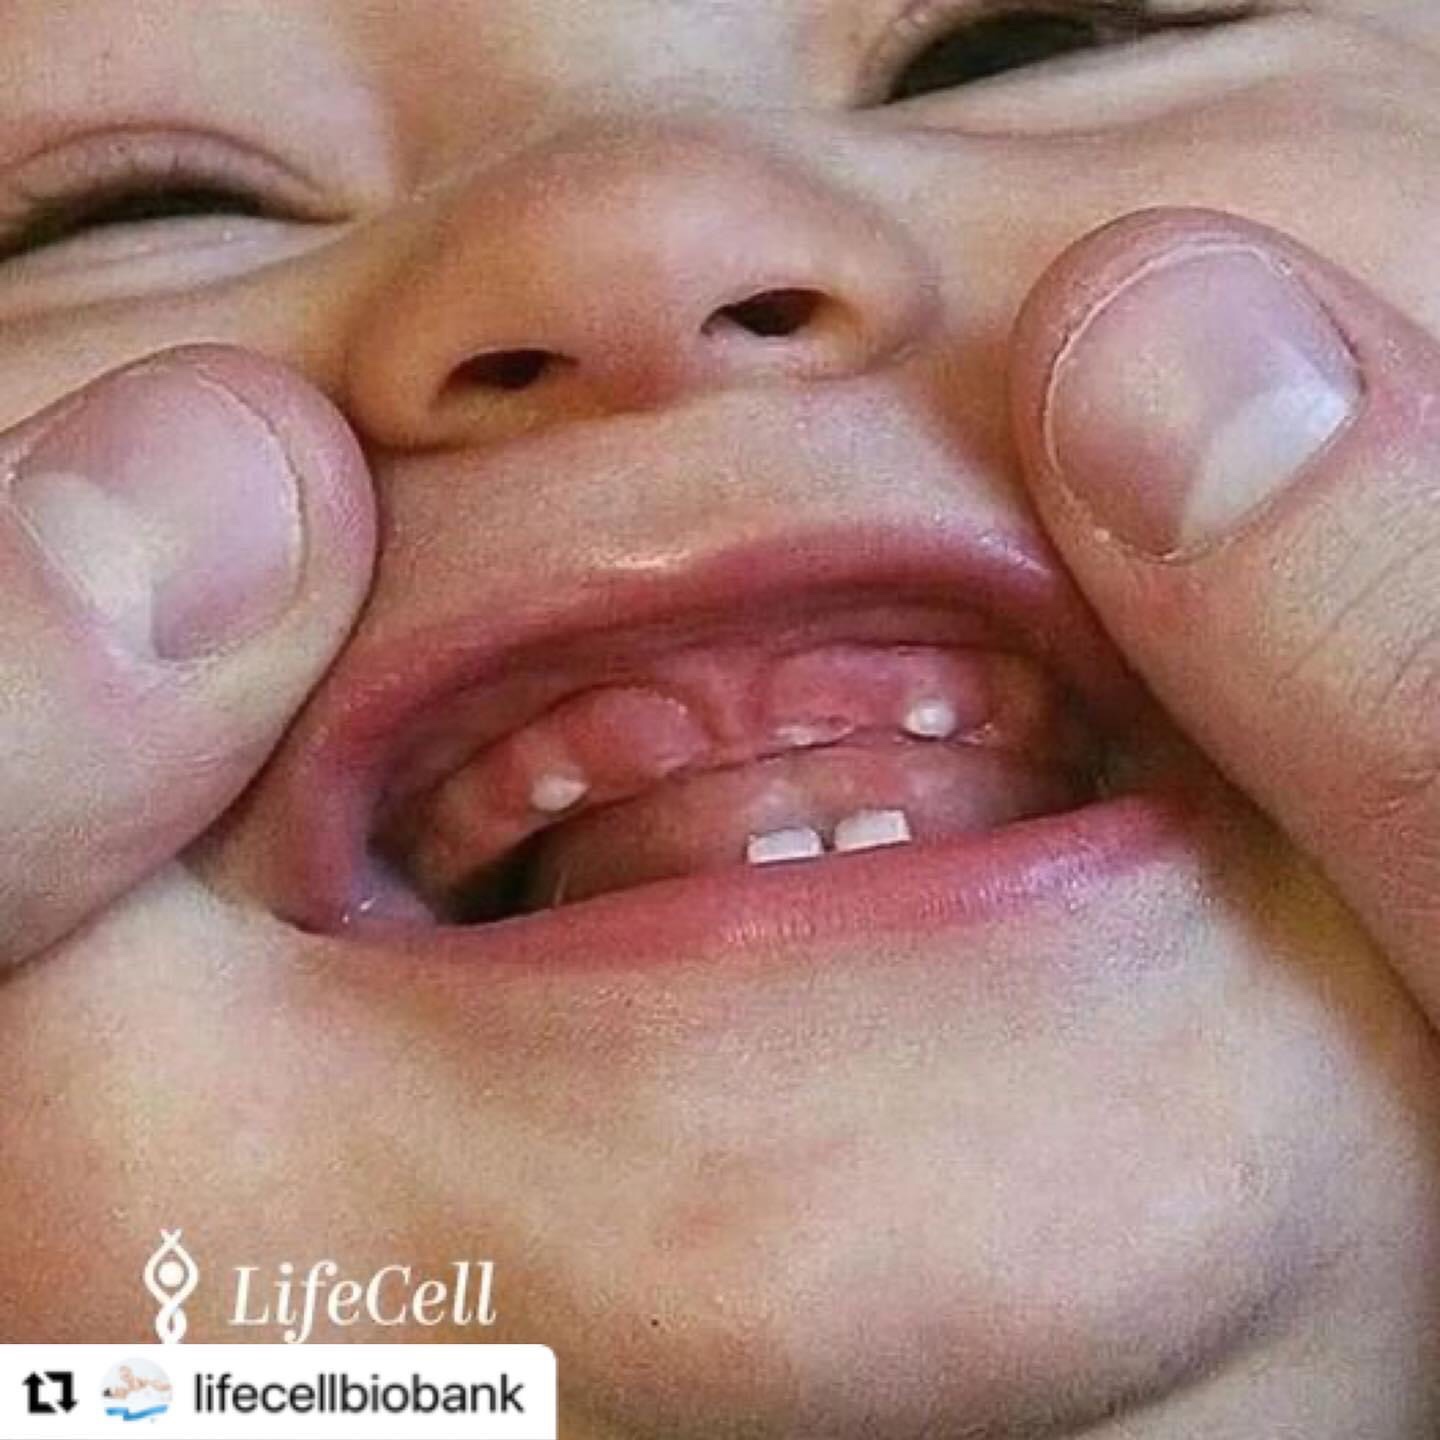 Mos i hidhni dhëmbët e qumështit, ata kanë qeliza staminale jetëshpëtuese.